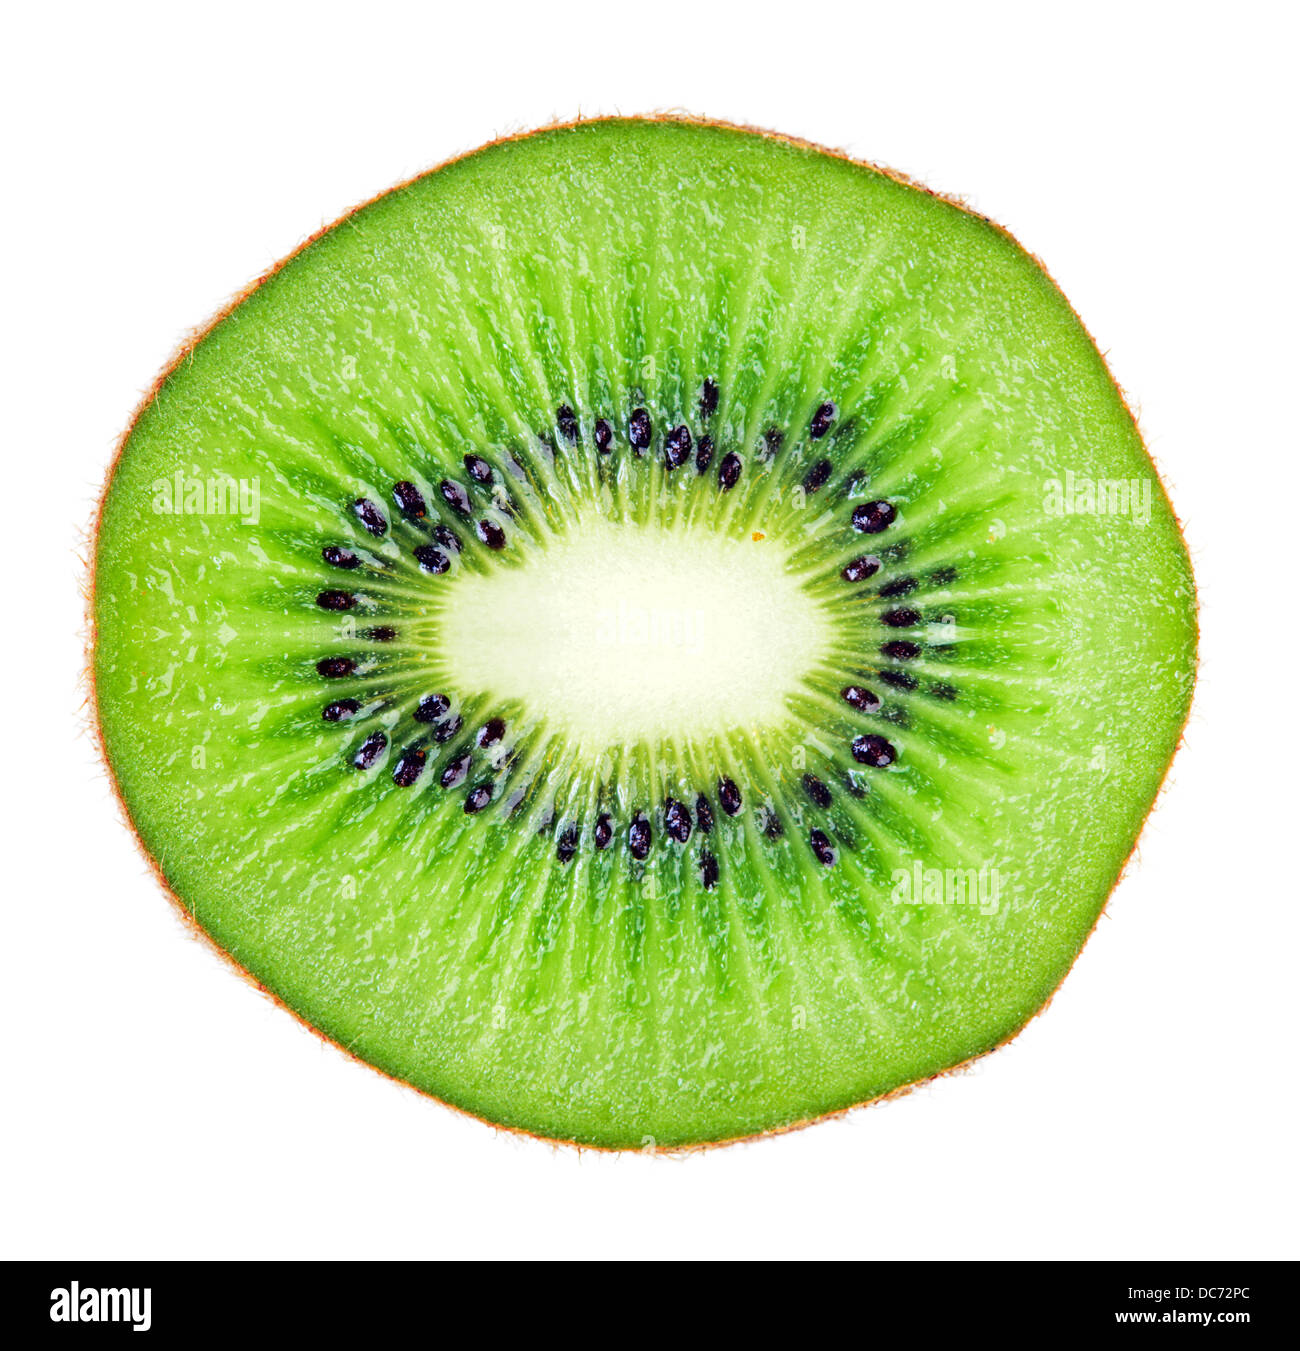 Tranches de fruits juteux kiwi macro sur blanc. Image de taille énorme Banque D'Images